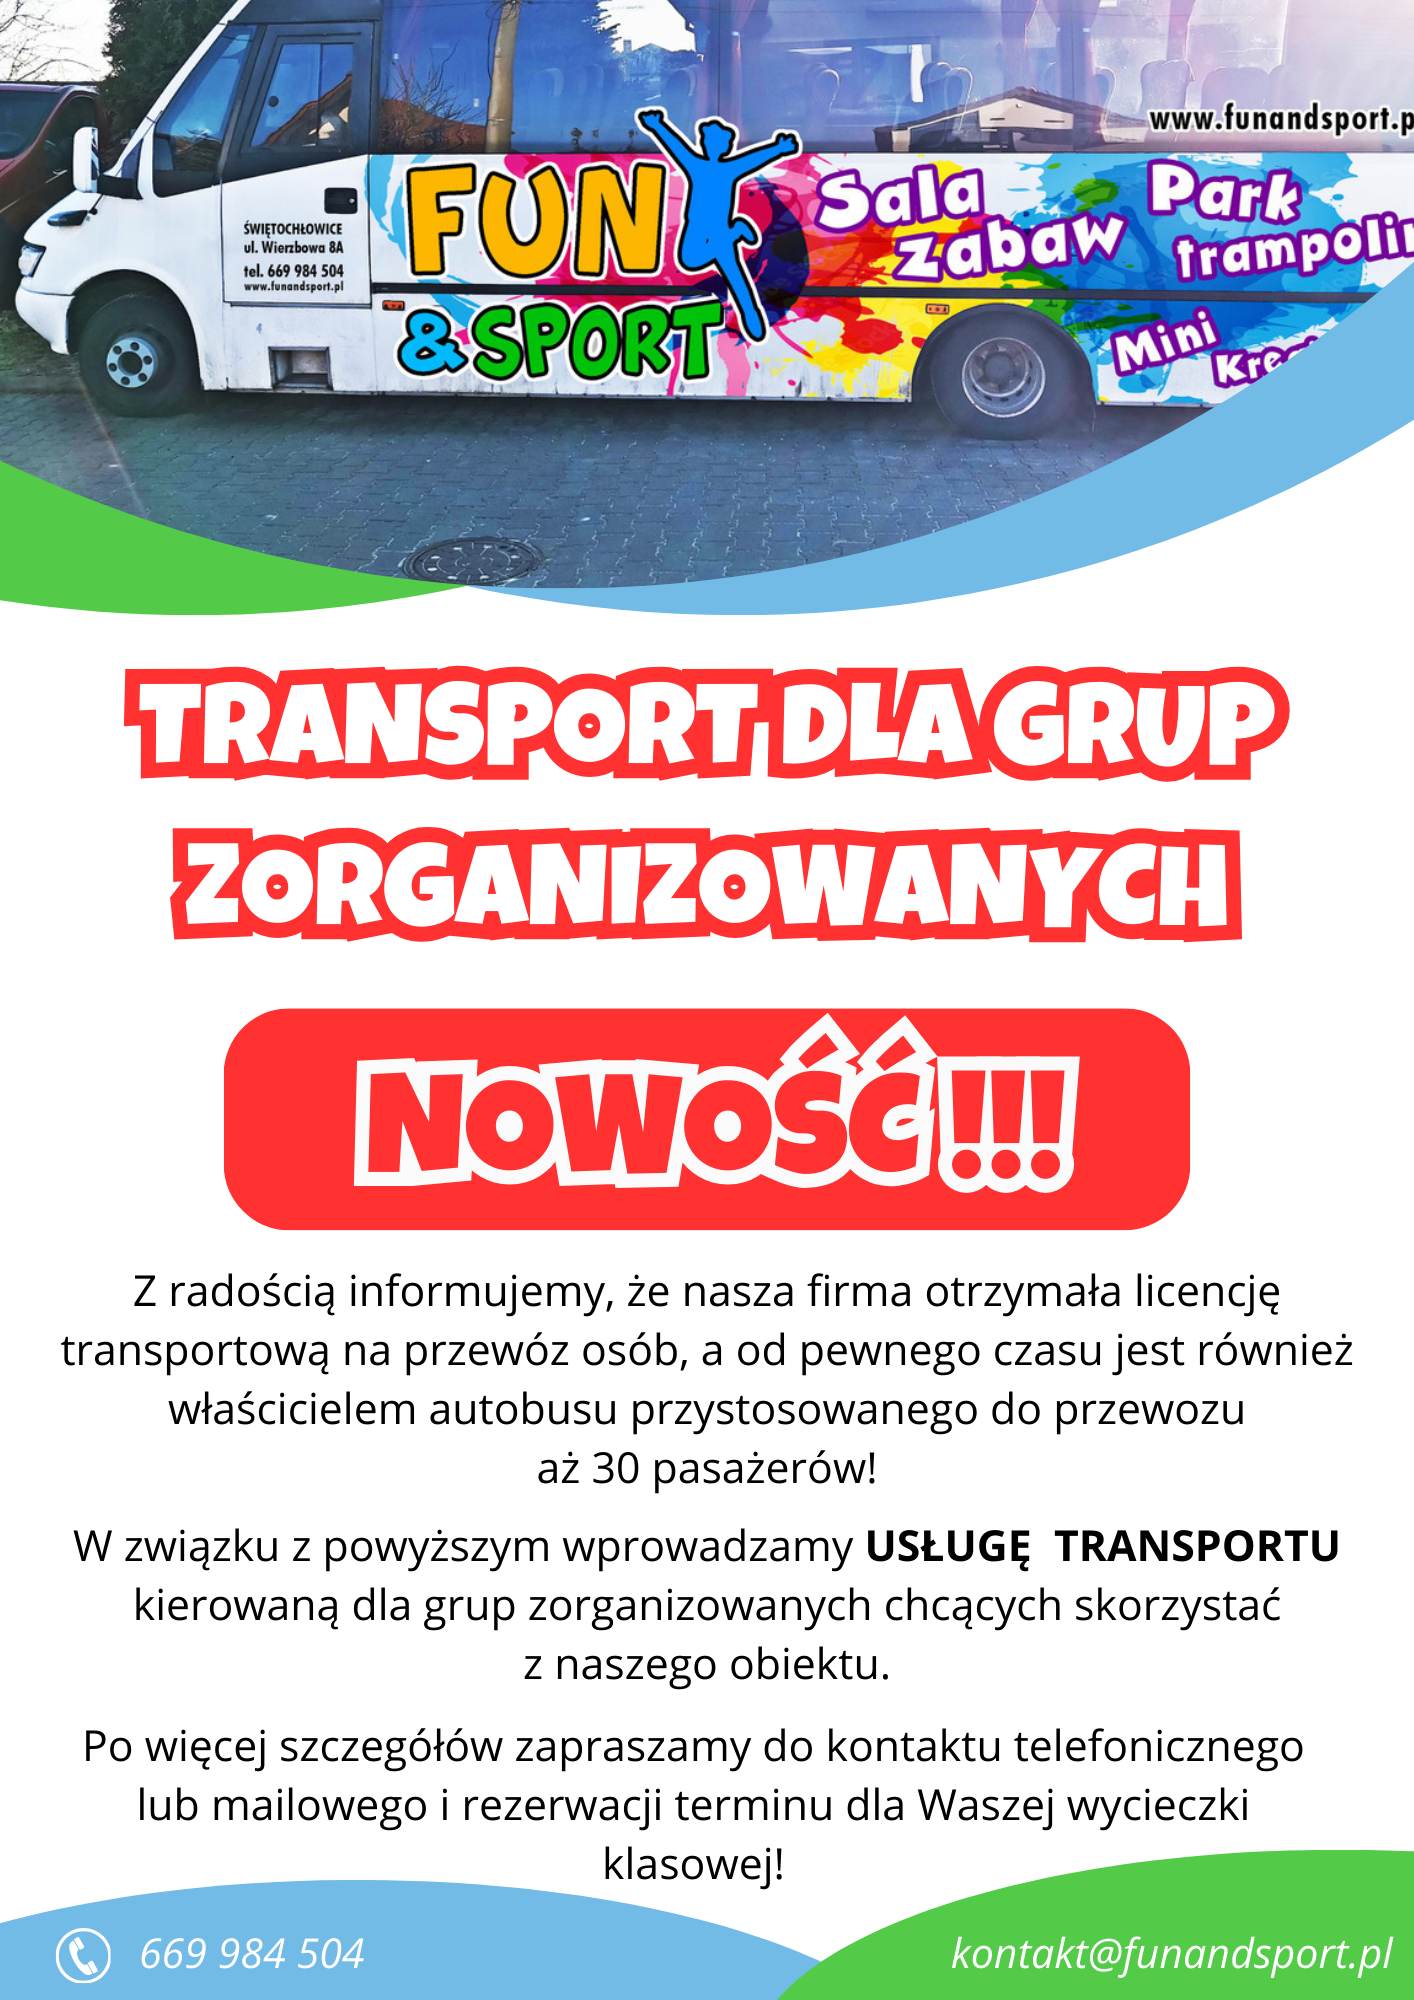 Usługa transportu dla grup zorganizowanych